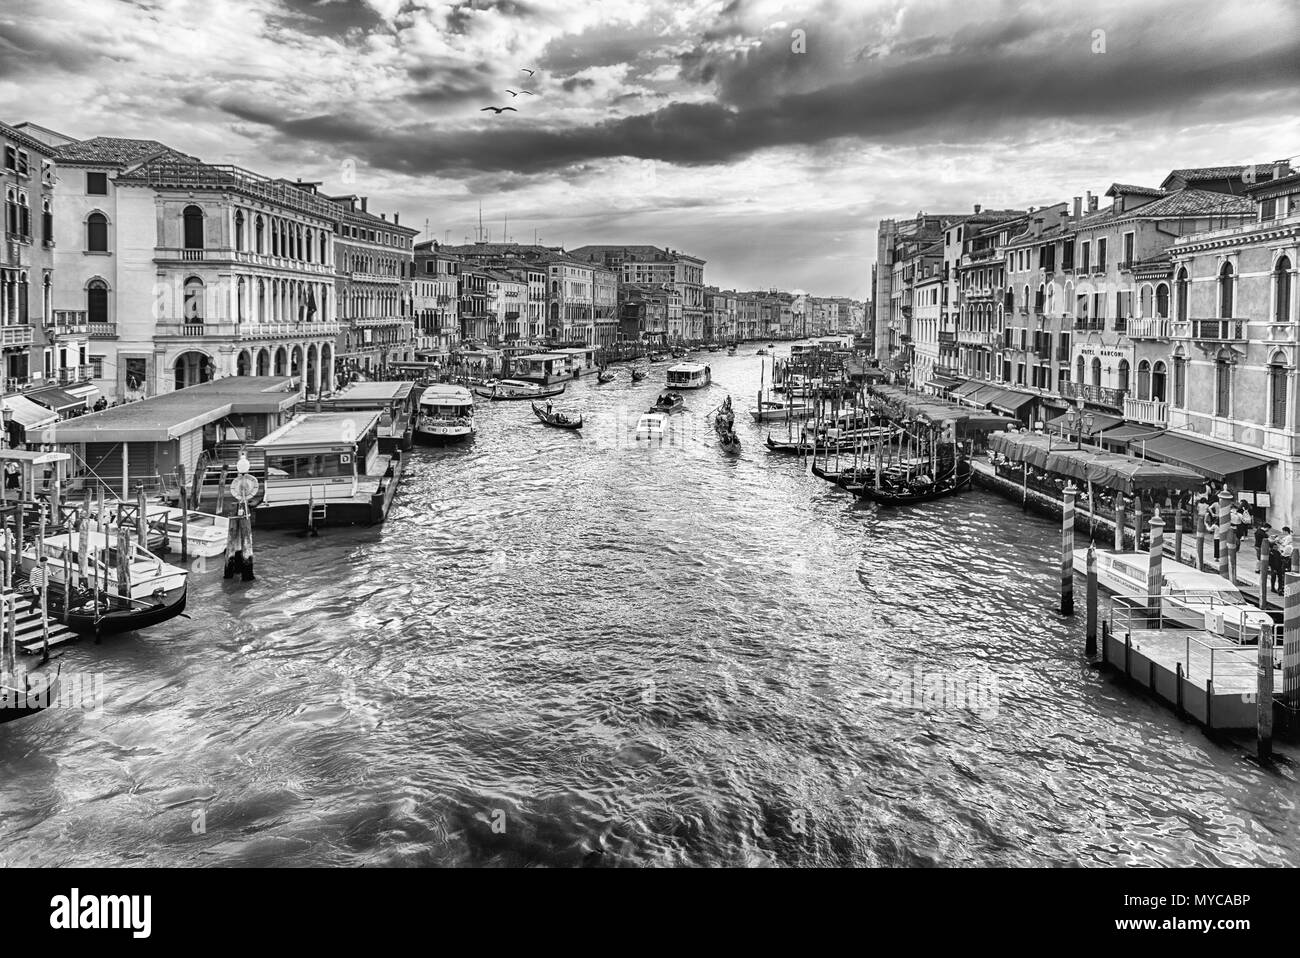 Venezia, Italia - 29 aprile: la veduta panoramica del Canal Grande al tramonto del famoso Ponte di Rialto, uno dei principali landmark a Venezia, Italia, come visto Foto Stock